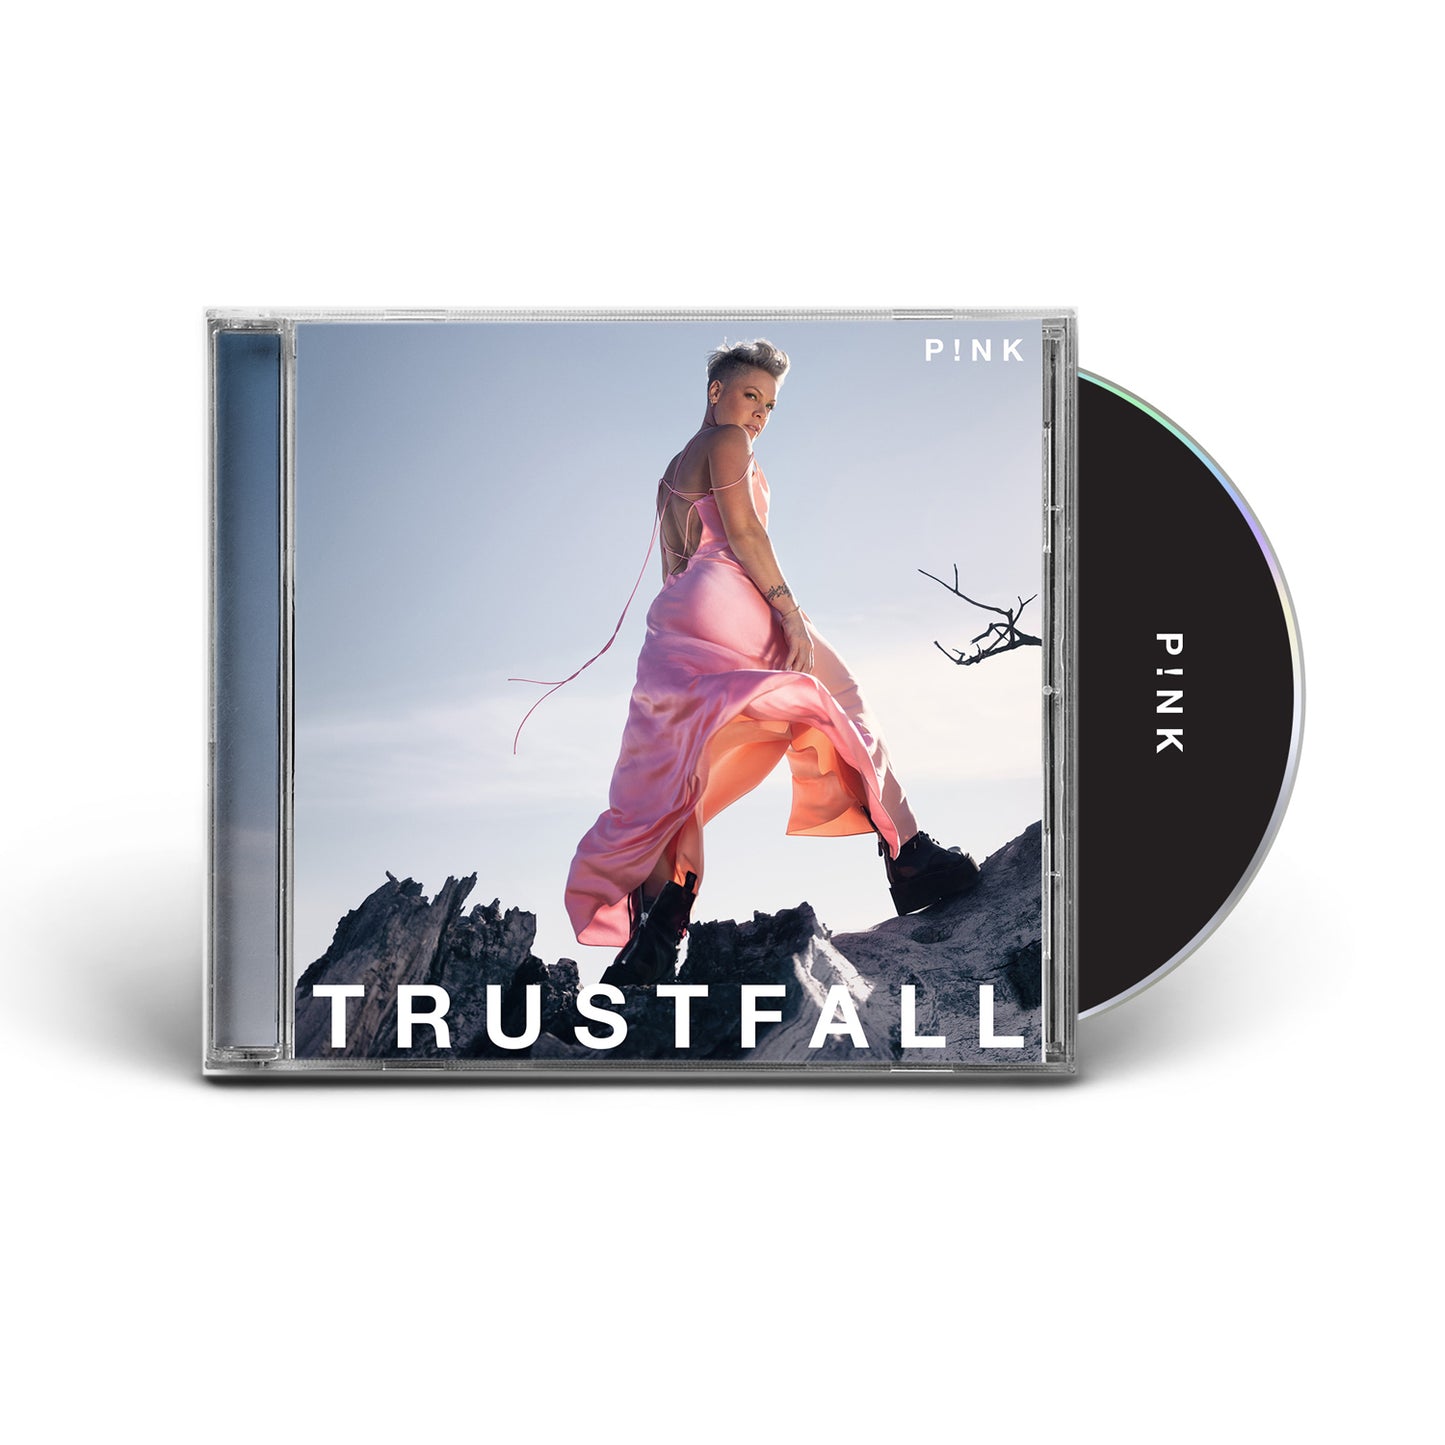 TRUSTFALL CD